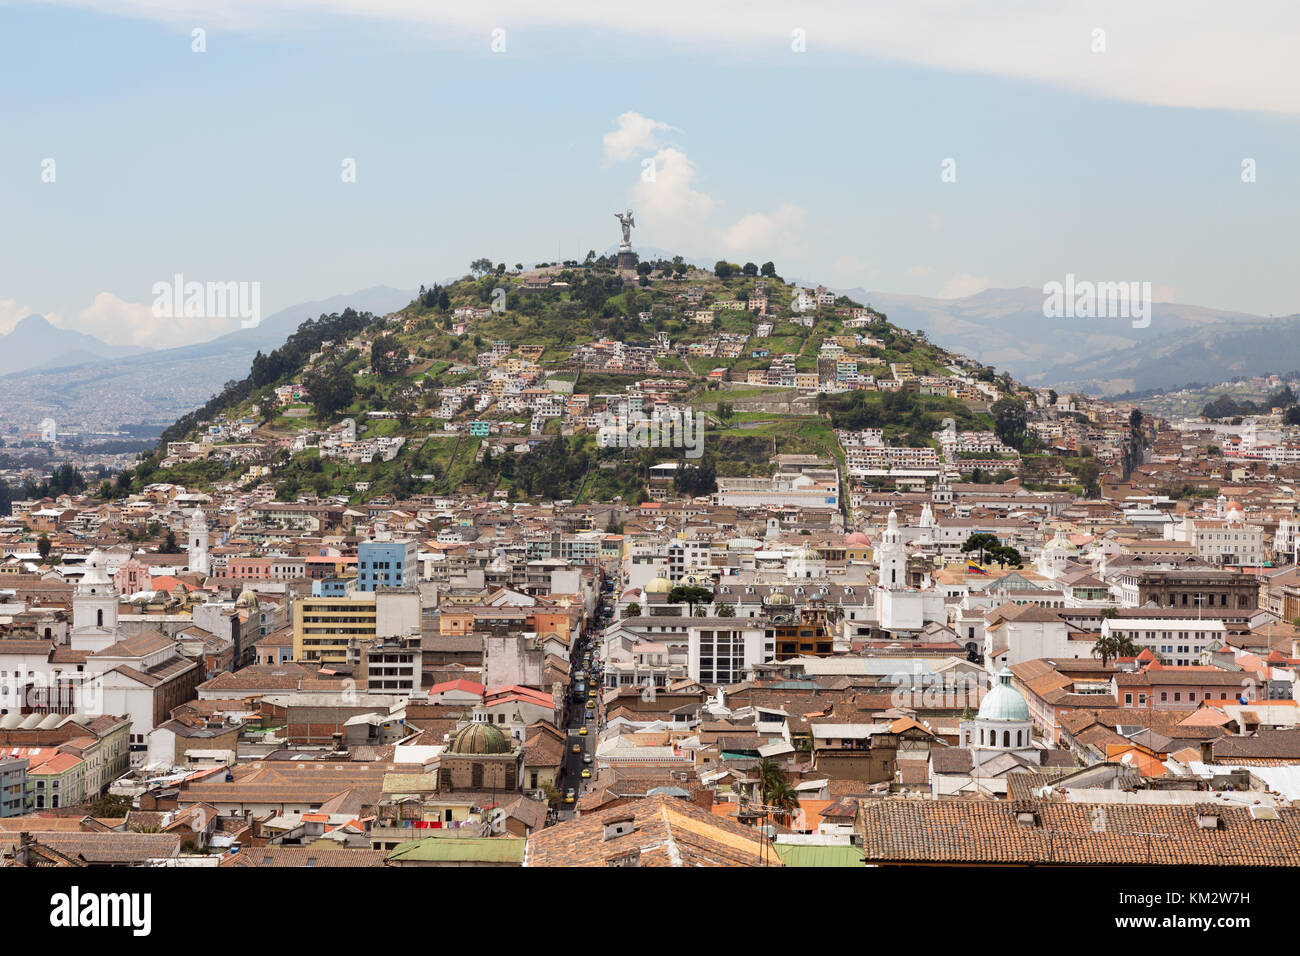 Quito CityScape; vue vers Panecillo Hill, Quito Équateur Amérique du Sud Banque D'Images